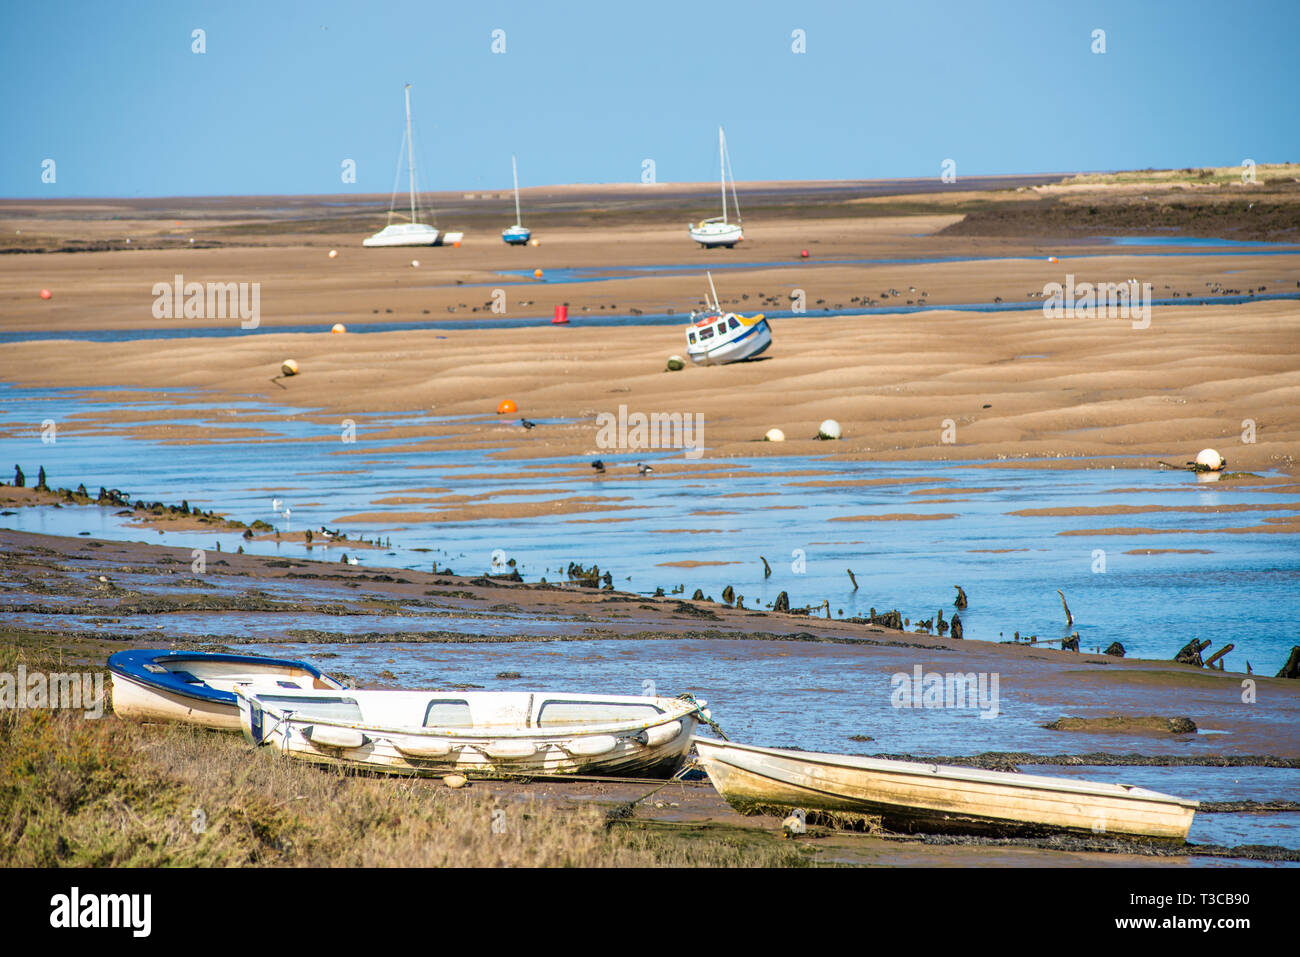 Bunte Boote marooned auf Sandbänken bei Ebbe im Osten Flotte Mündung an der Brunnen neben dem Meer, North Norfolk Coast, East Anglia, England, UK. Stockfoto